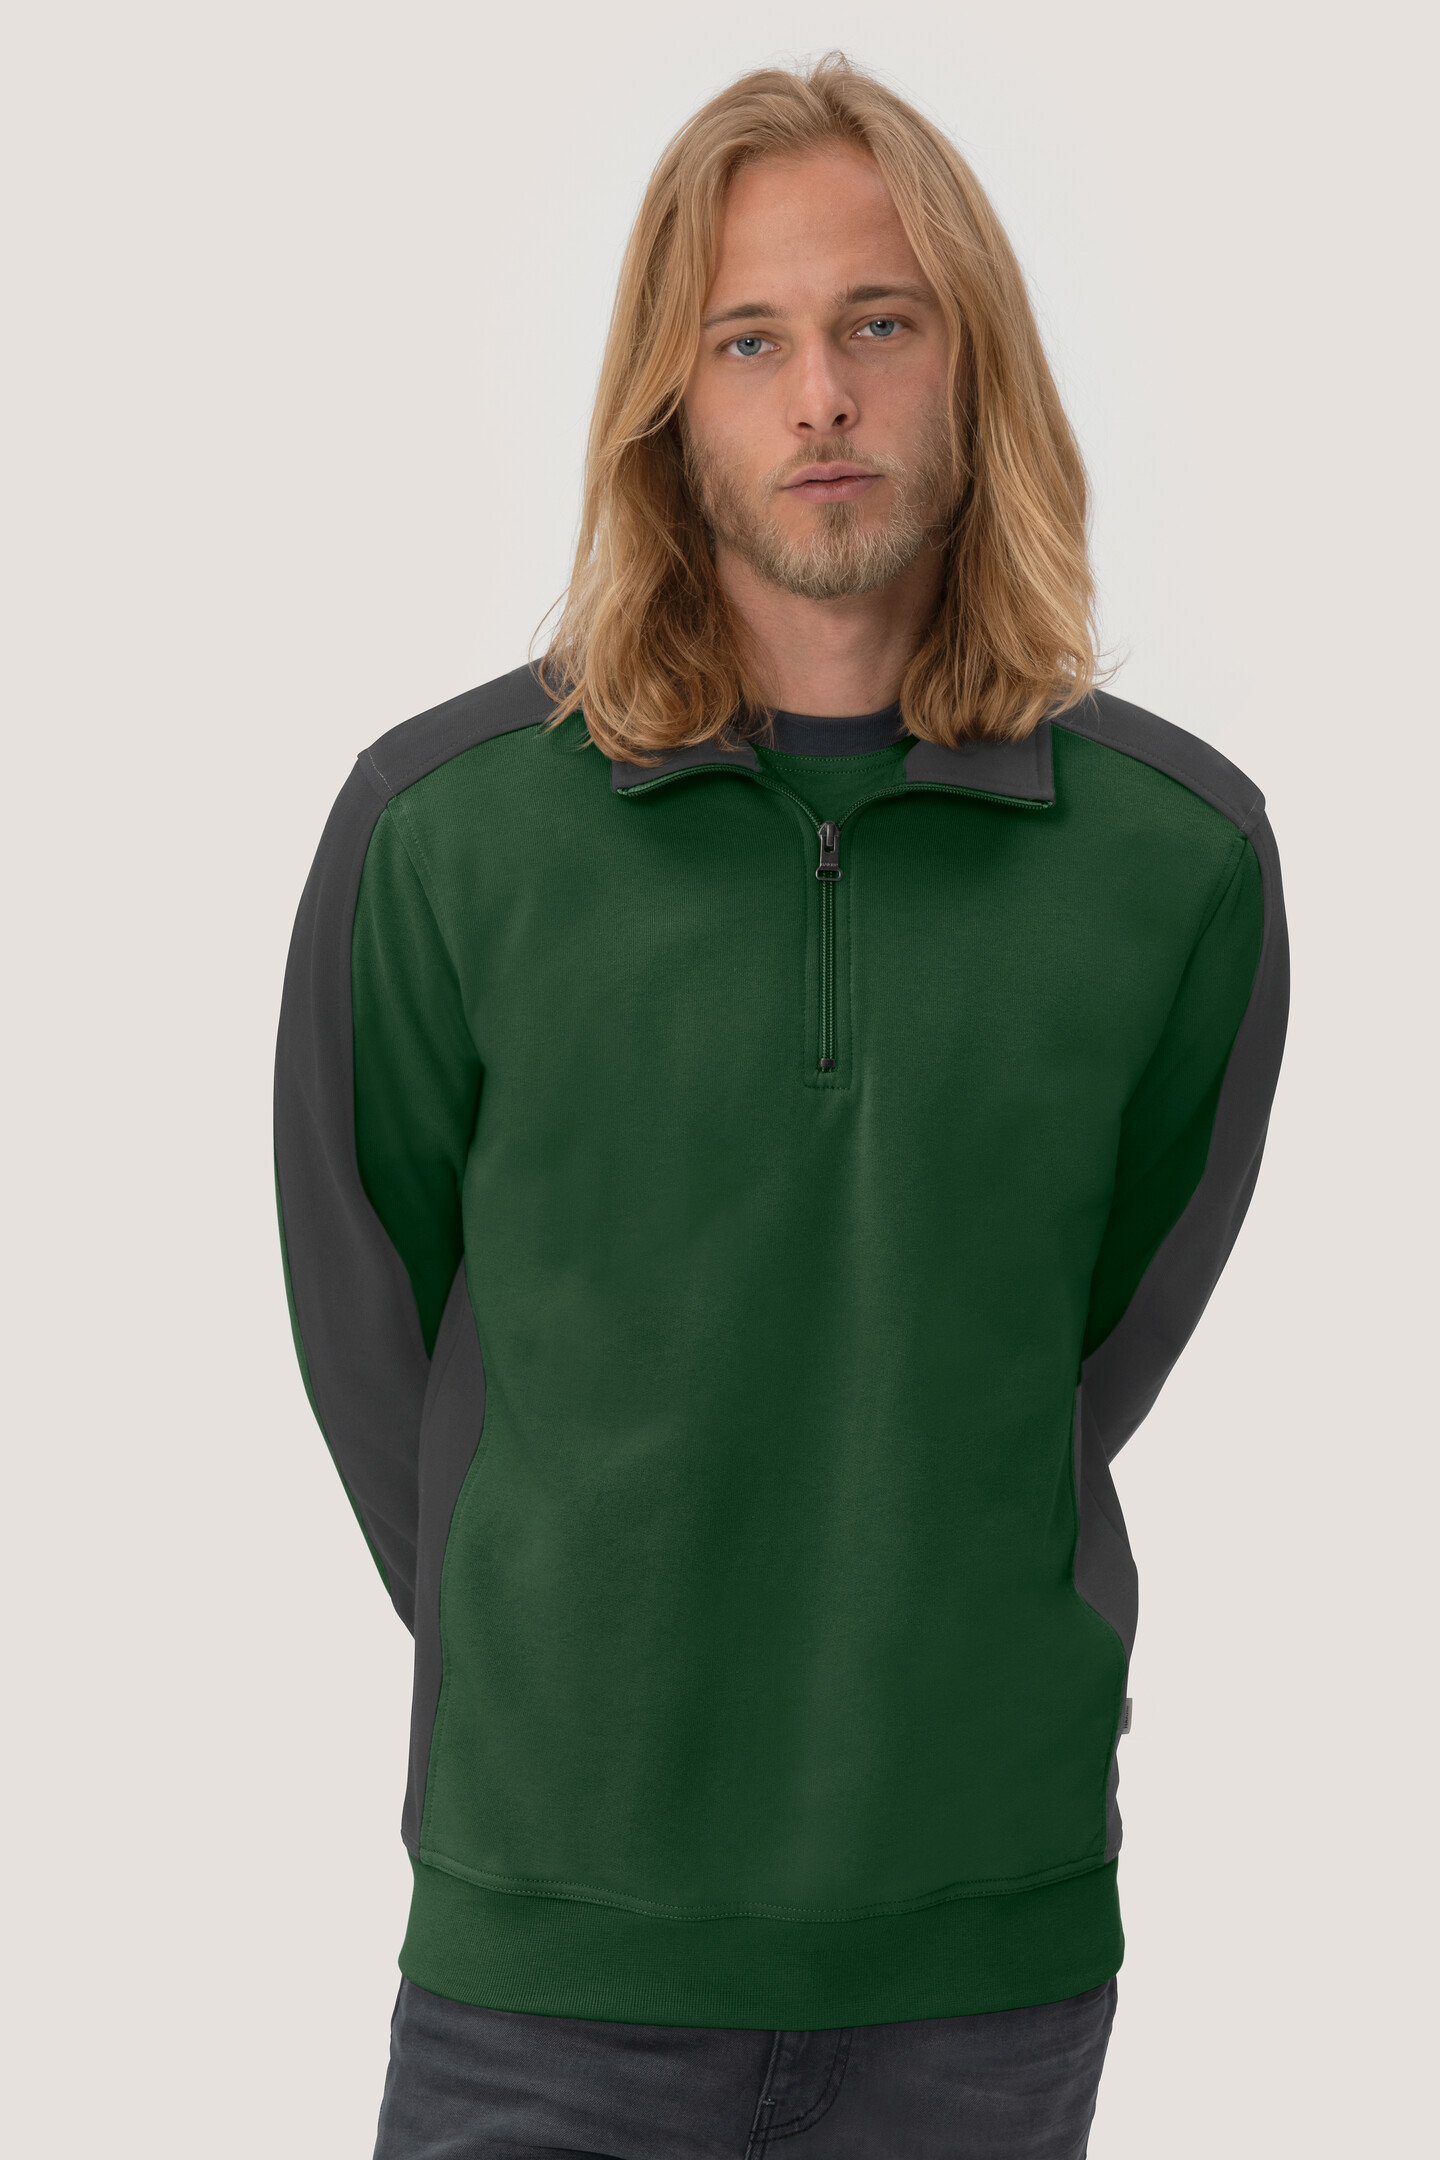 HAKRO Zip-Sweatshirt 476 Contrast Mikralinar®